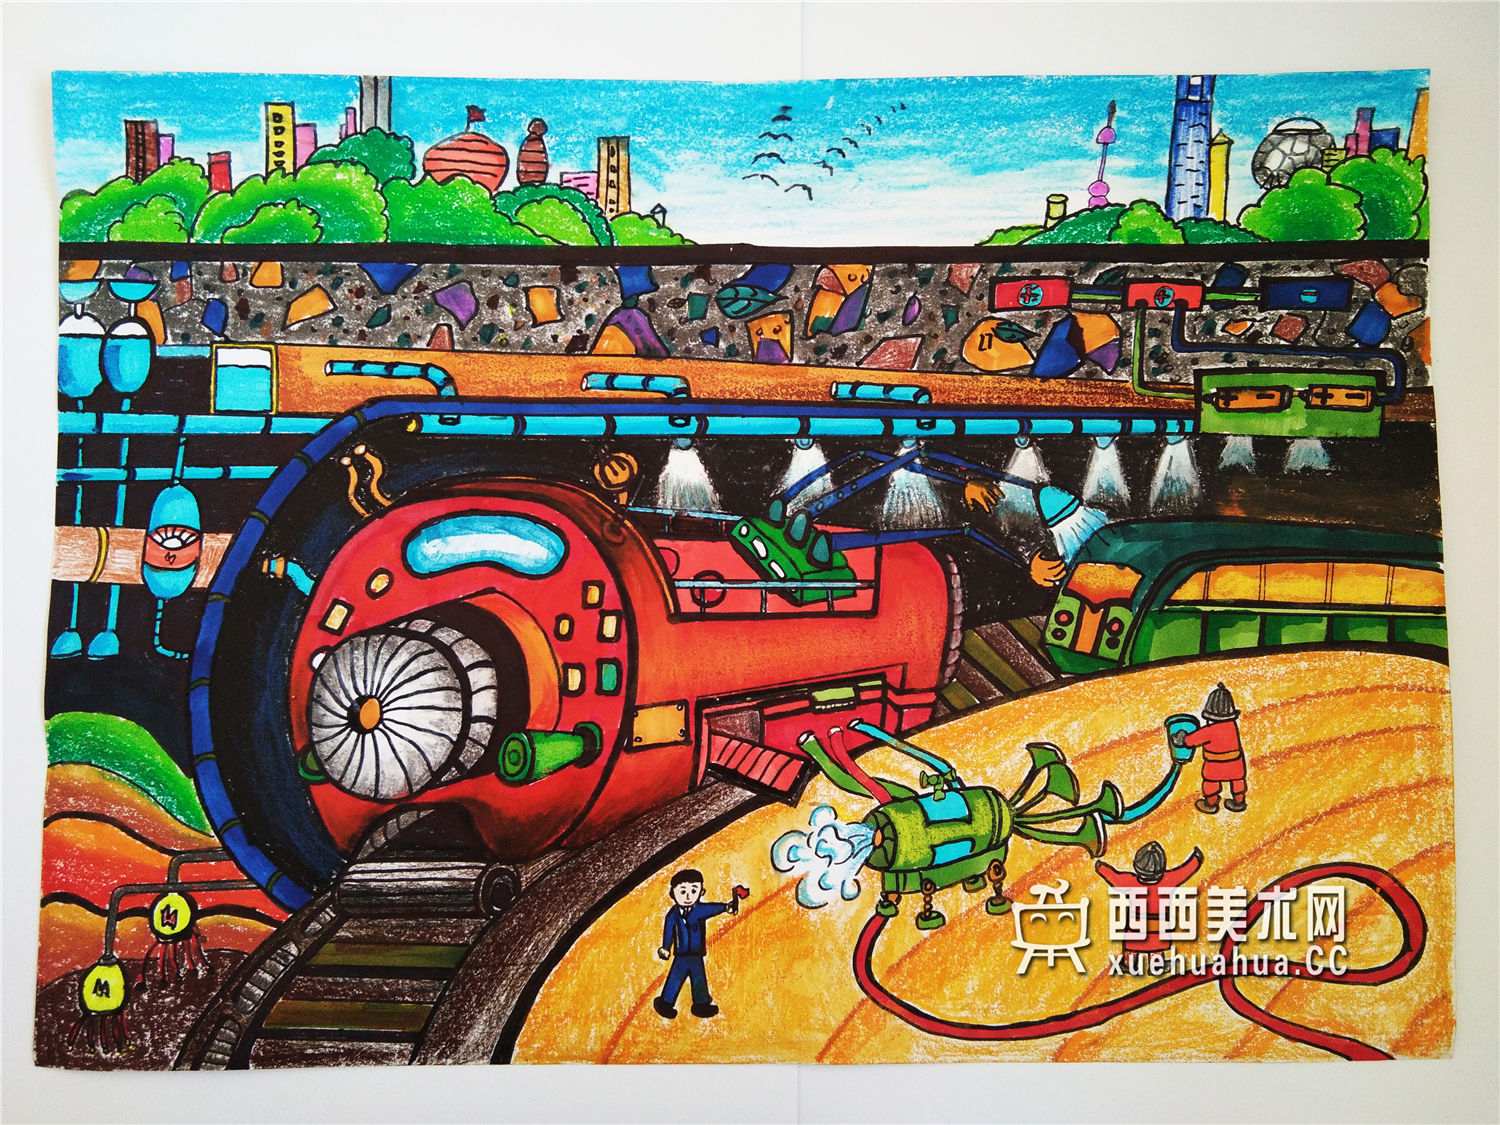 中学生获奖科幻画作品《未来城市》(1)